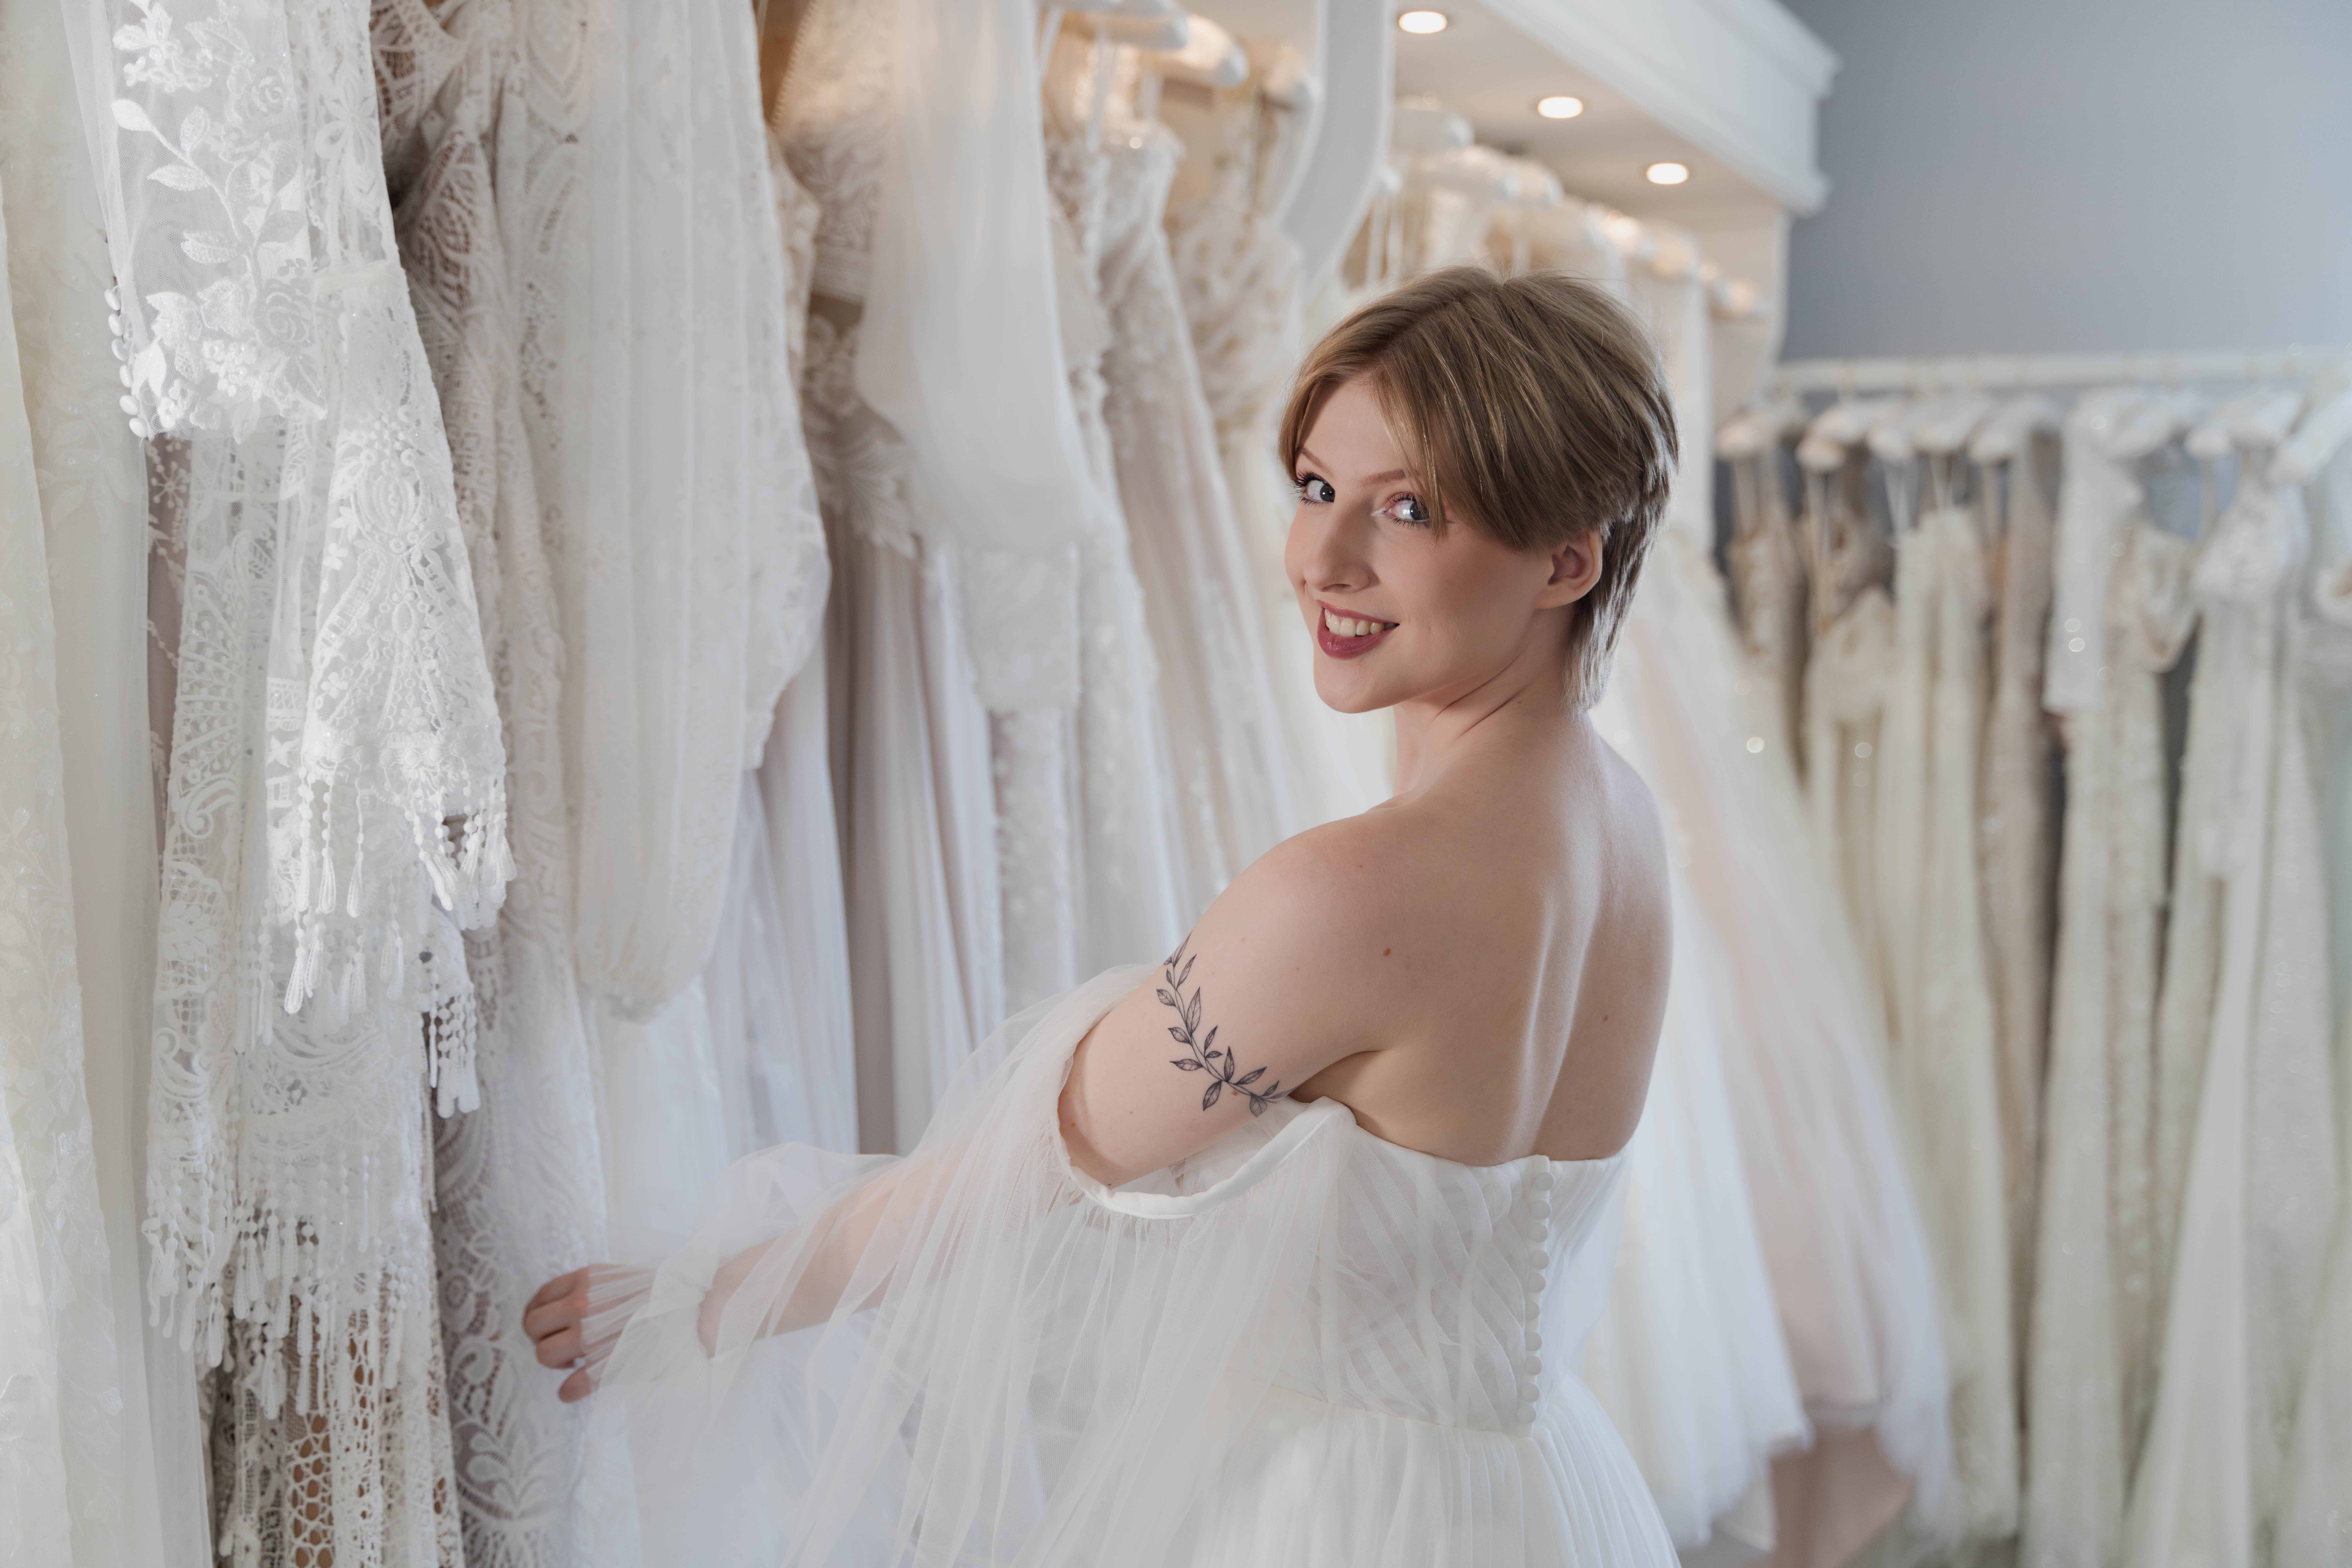 A bride choosing a wedding dress